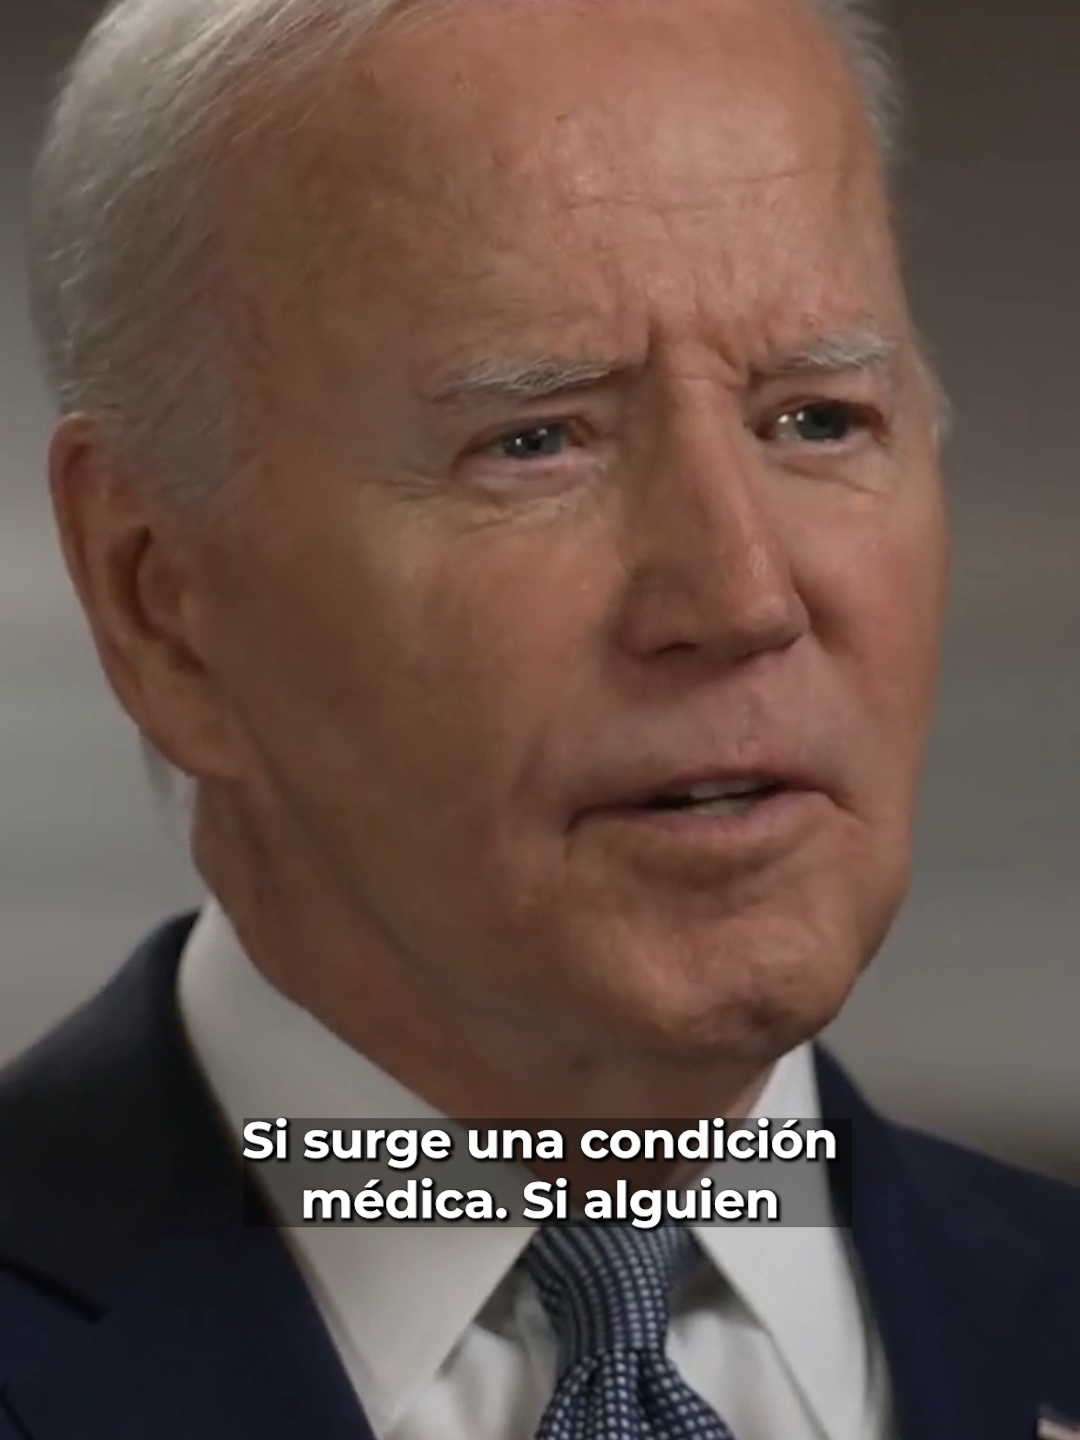 Joe Biden revela que se retiraría de la contienda por la presidencia de Estados Unidos sólo si presenta problemas de salud. #Latinus #InformaciónParaTi 